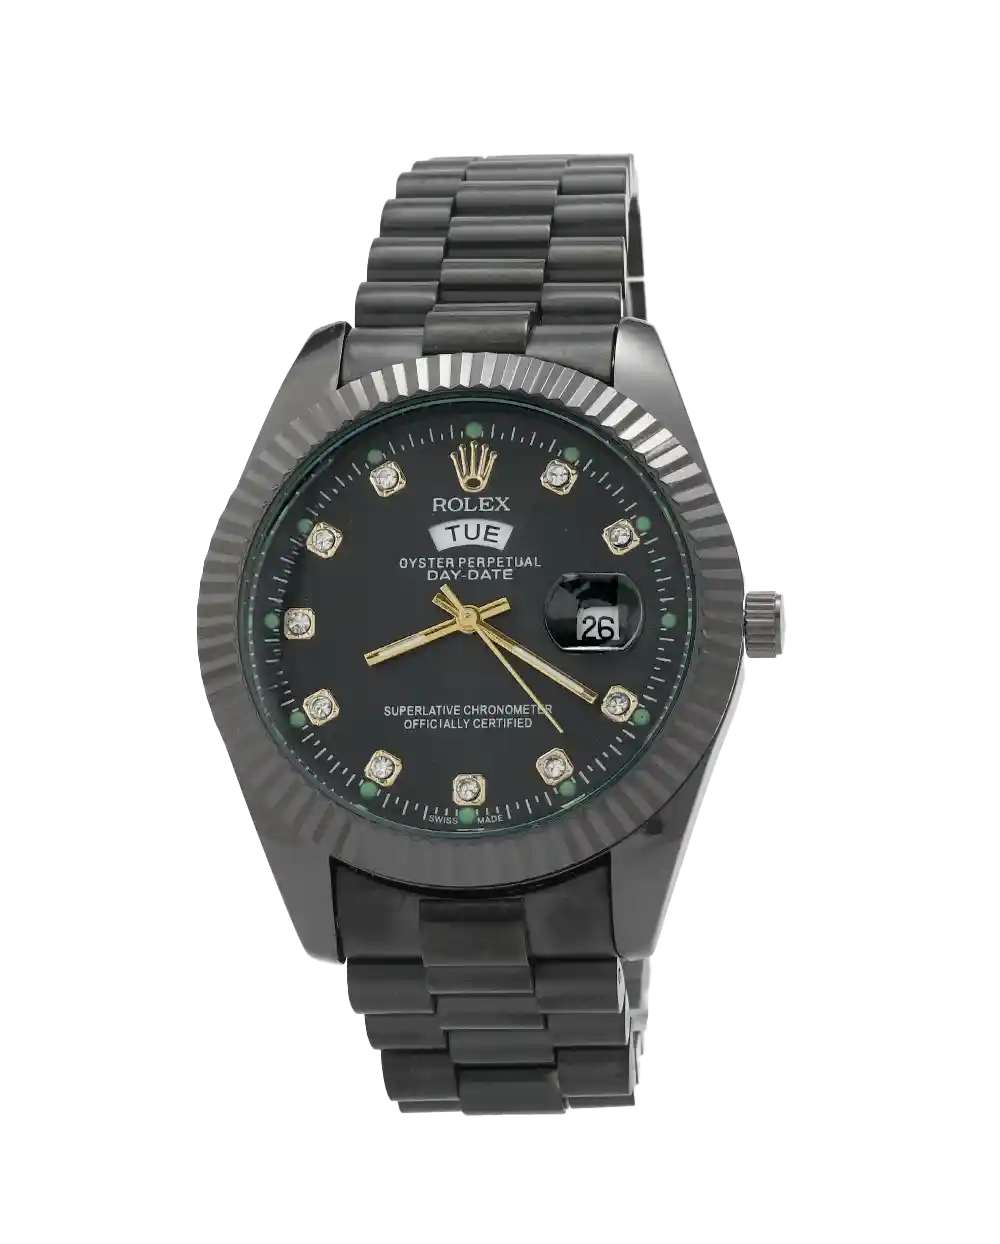 خرید ساعت ساعت مچی مردانه رولکس ROLEX طرح DAY DATE مدل 2050 رنگ مشکی و موتور شرکتی با کیفیت و تقویم ایام هفته بهترین قیمت و ارسال رایگان